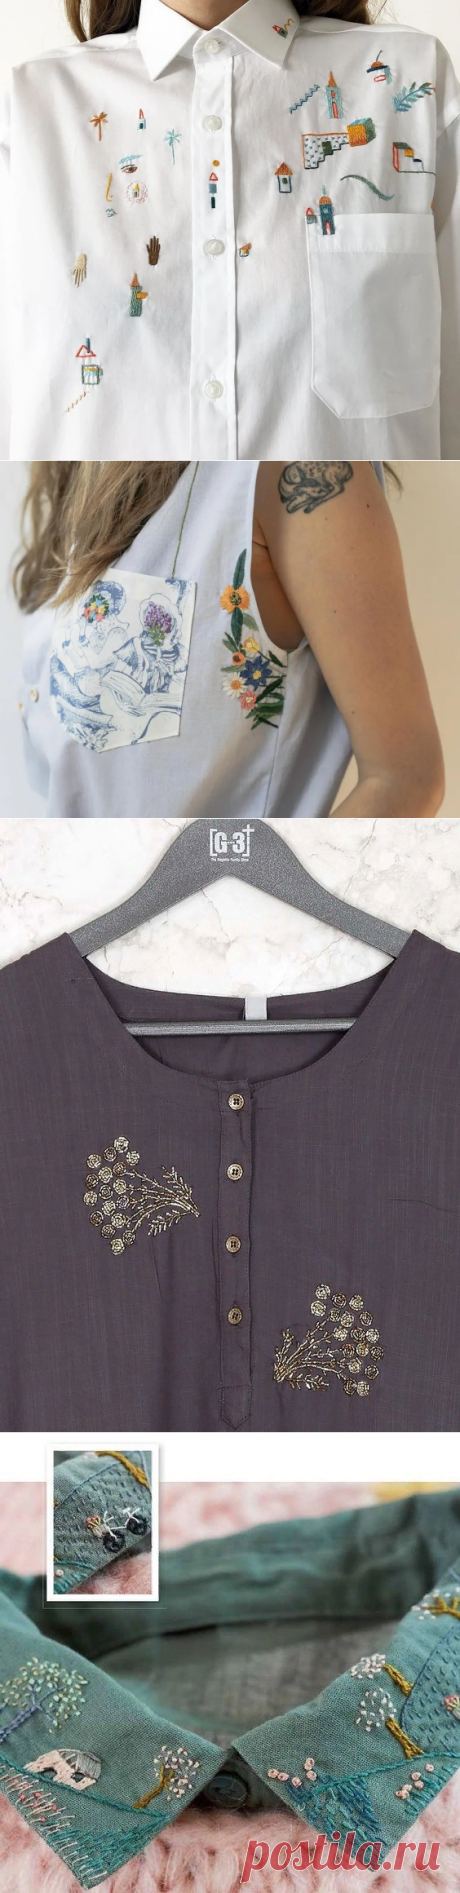 Вдохновляющая вышивка на блузах. | Handmade для всех | Яндекс Дзен